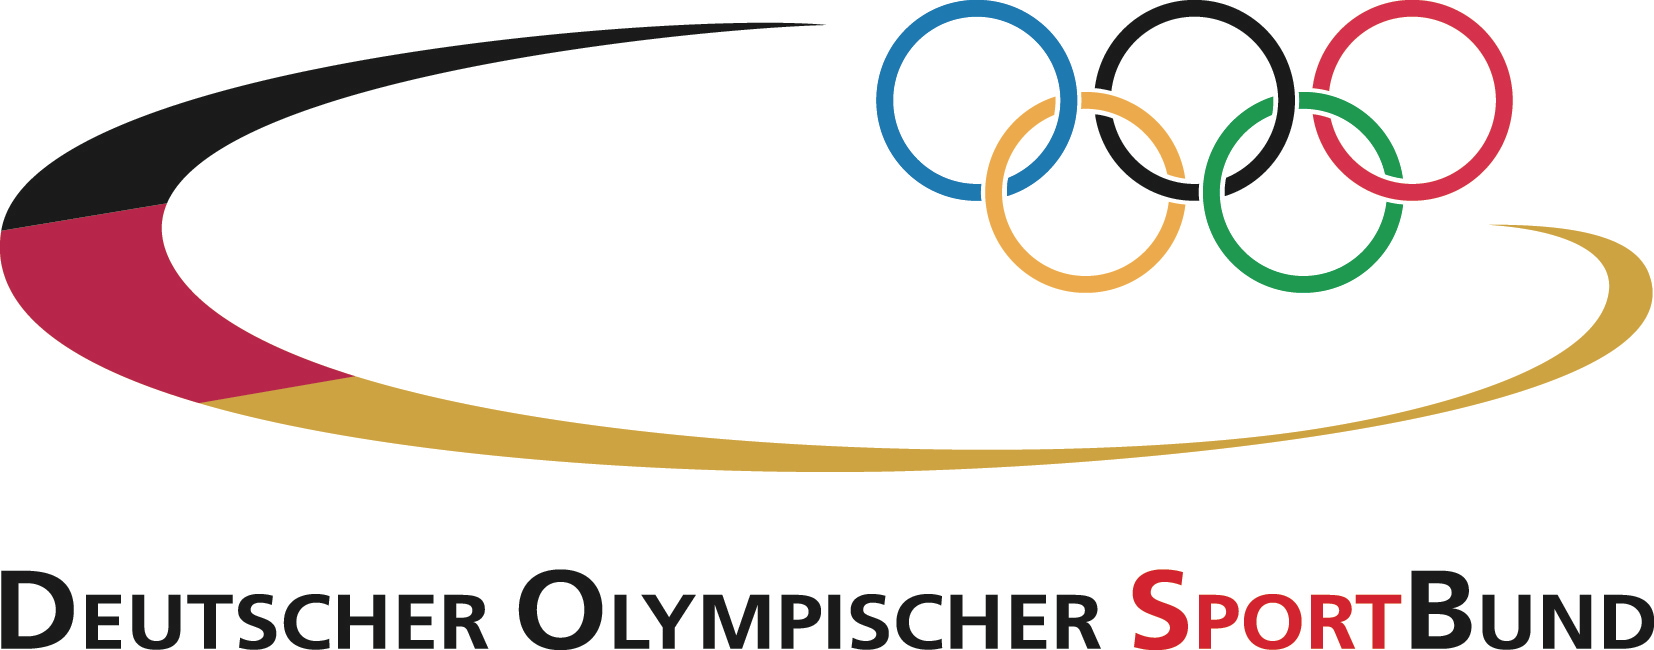 Bayern-24/7.de - Bayern Infos & Bayern Tipps | Deutscher Olympischer SportBund (DOSB)